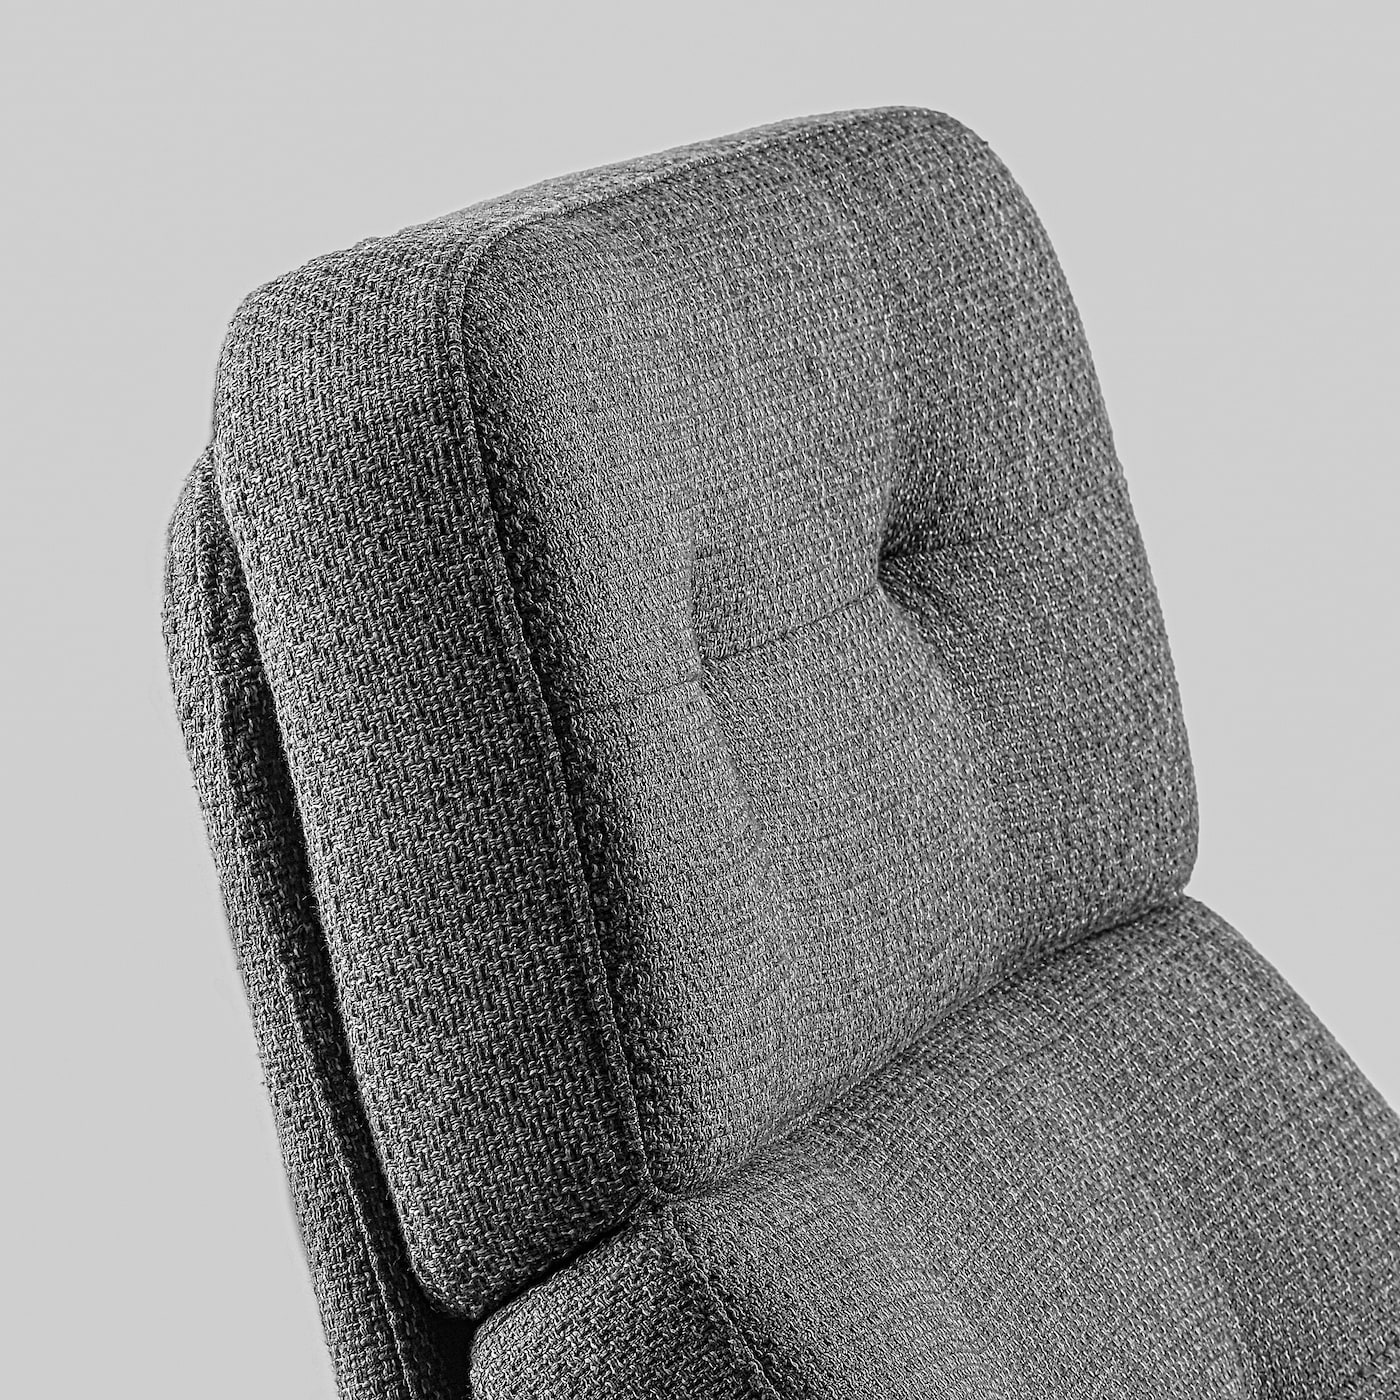 HAVBERG 哈伯格单人沙发/扶手椅和脚凳雷德灰色/黑色- IKEA